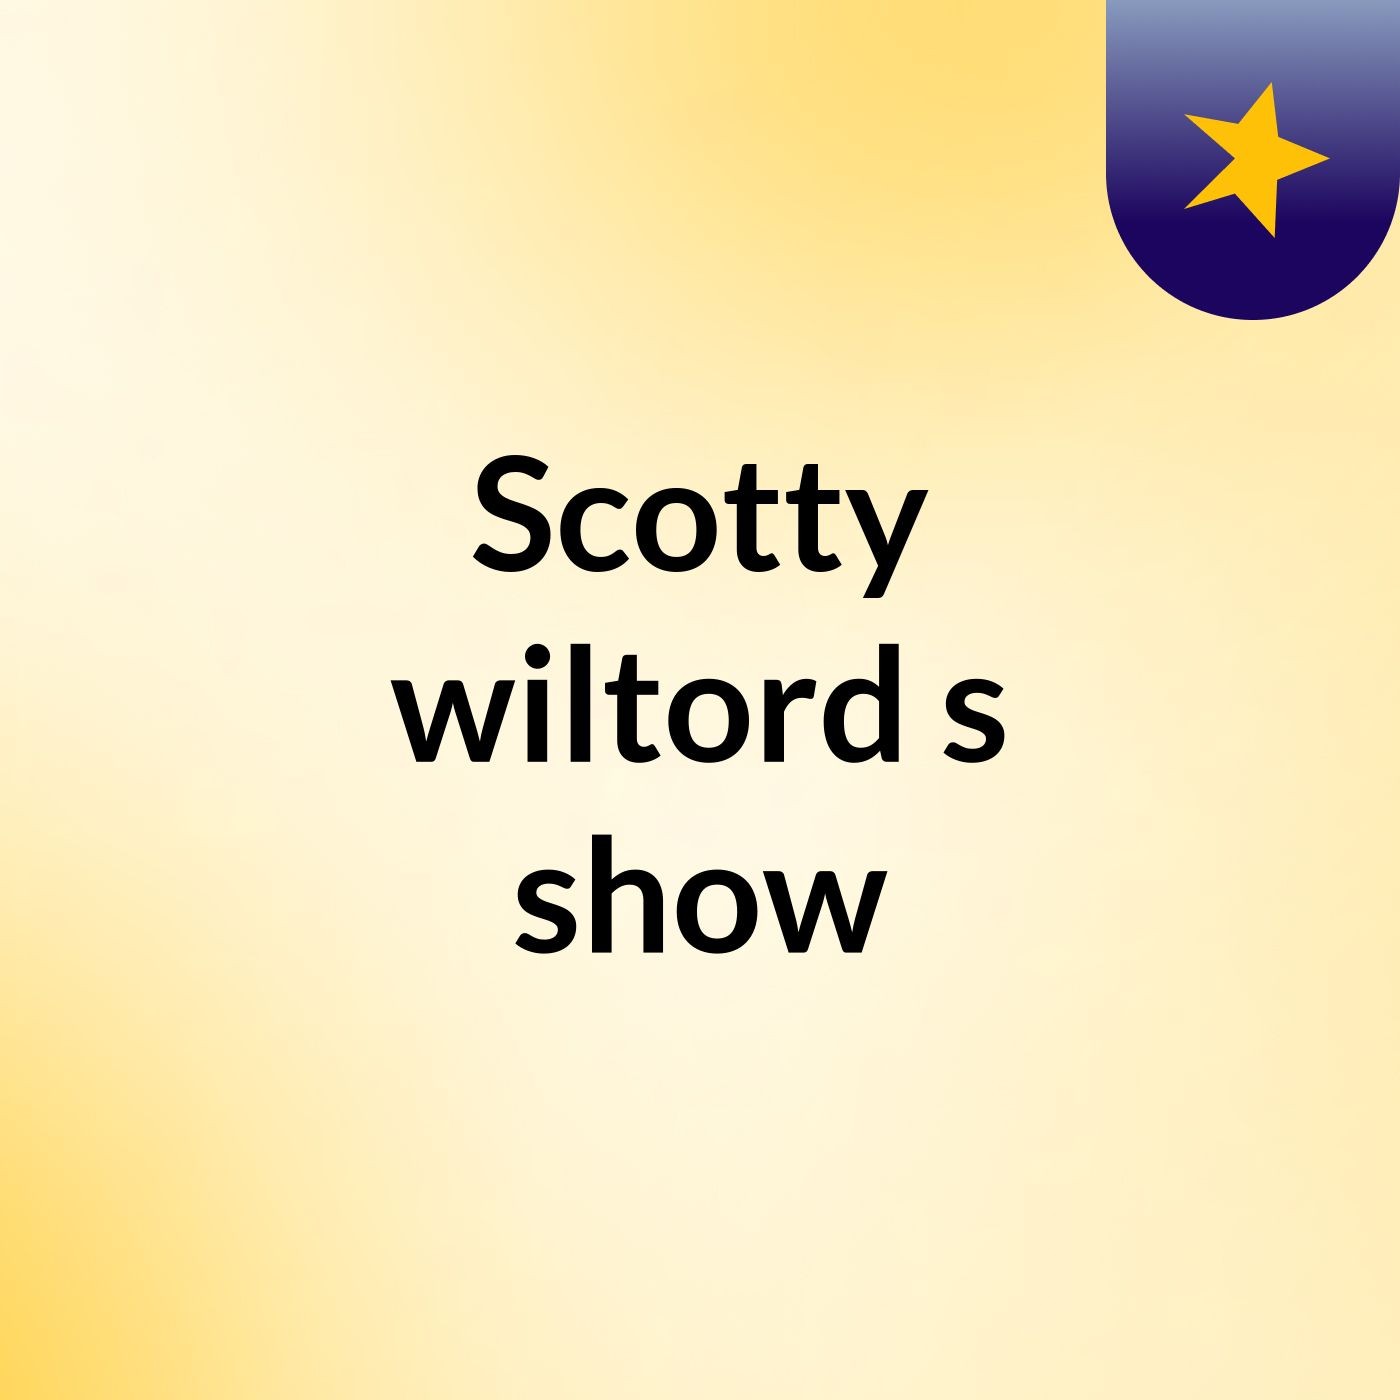 Scotty wiltord's show